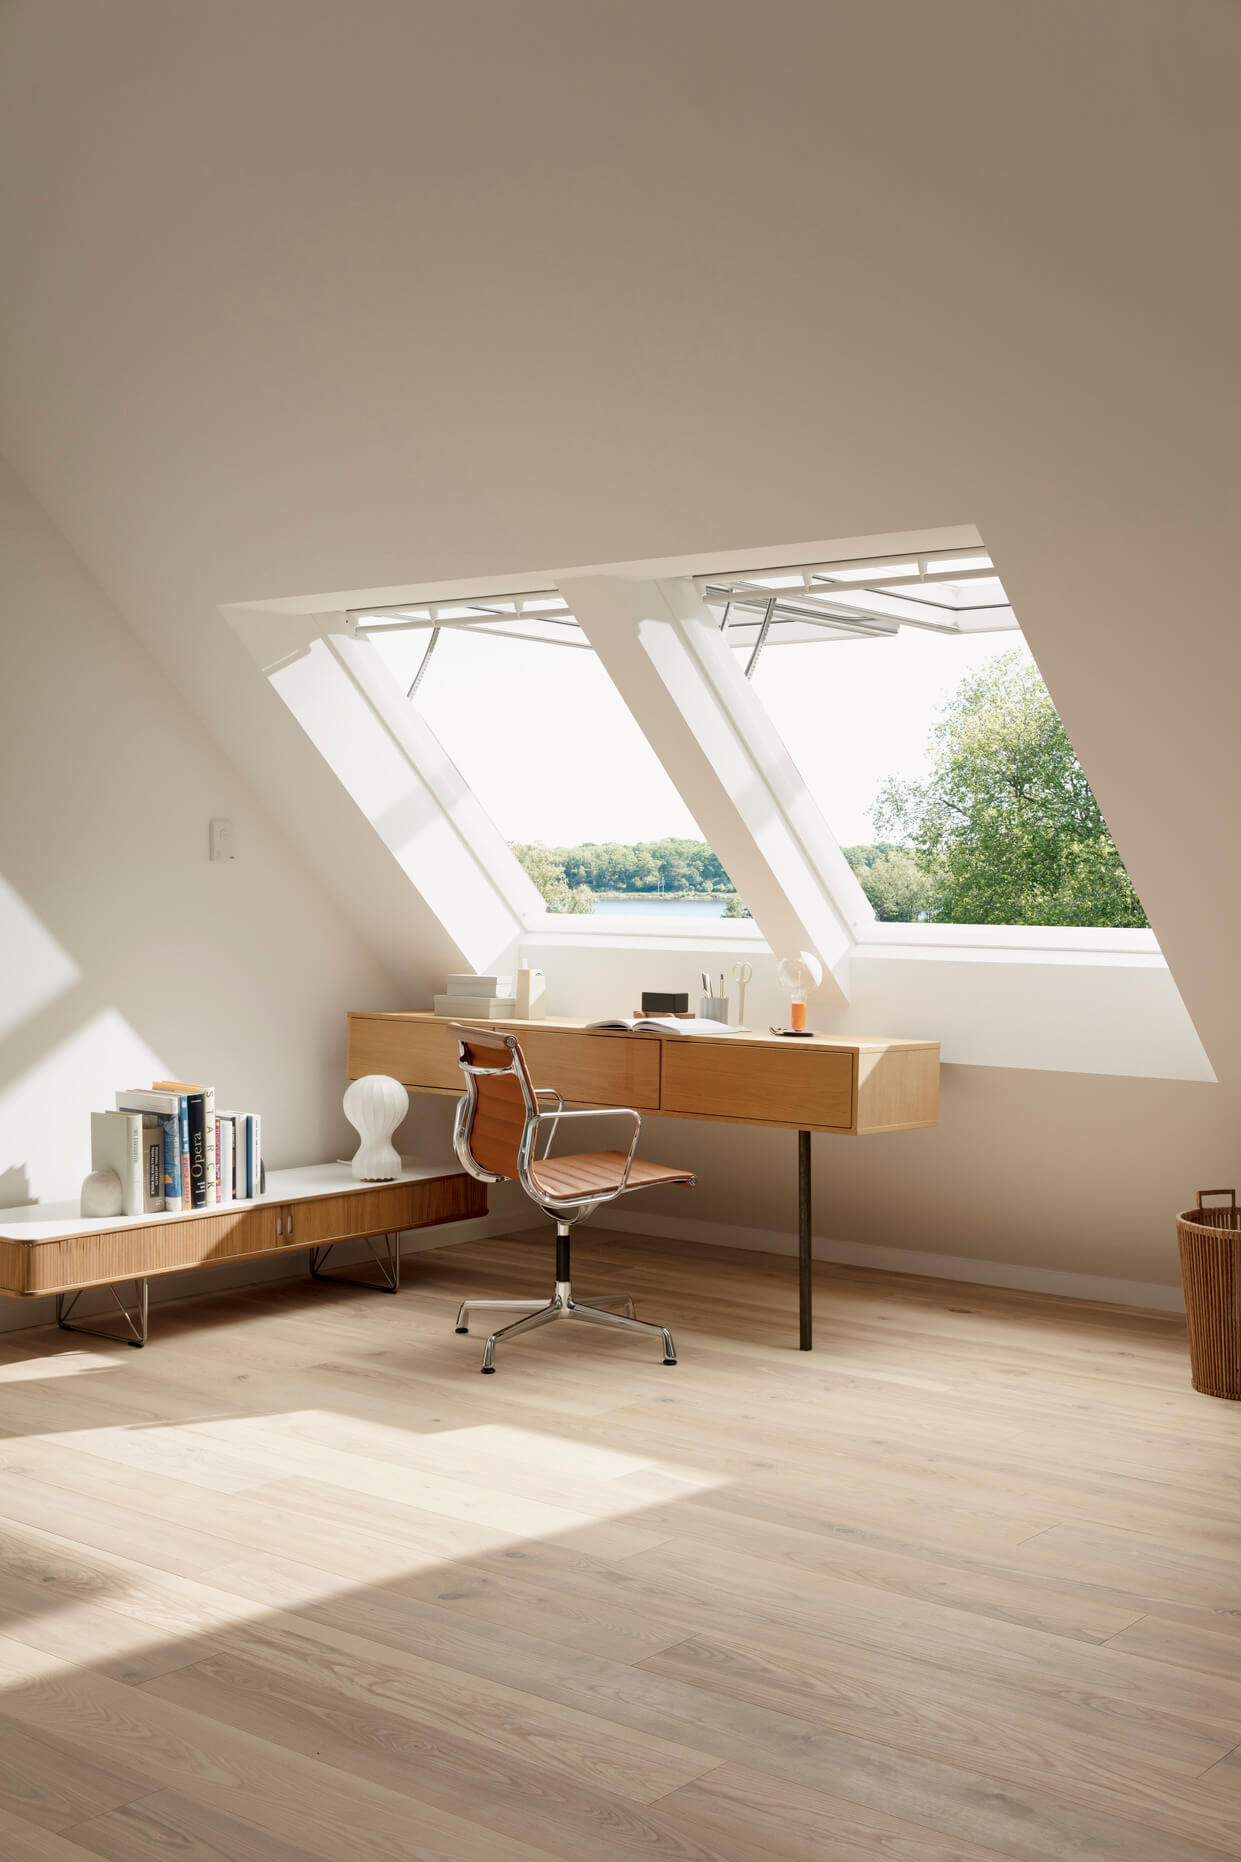 Modernes Dachboden-Homeoffice mit VELUX Dachflächenfenster und hölzernen Möbeln.